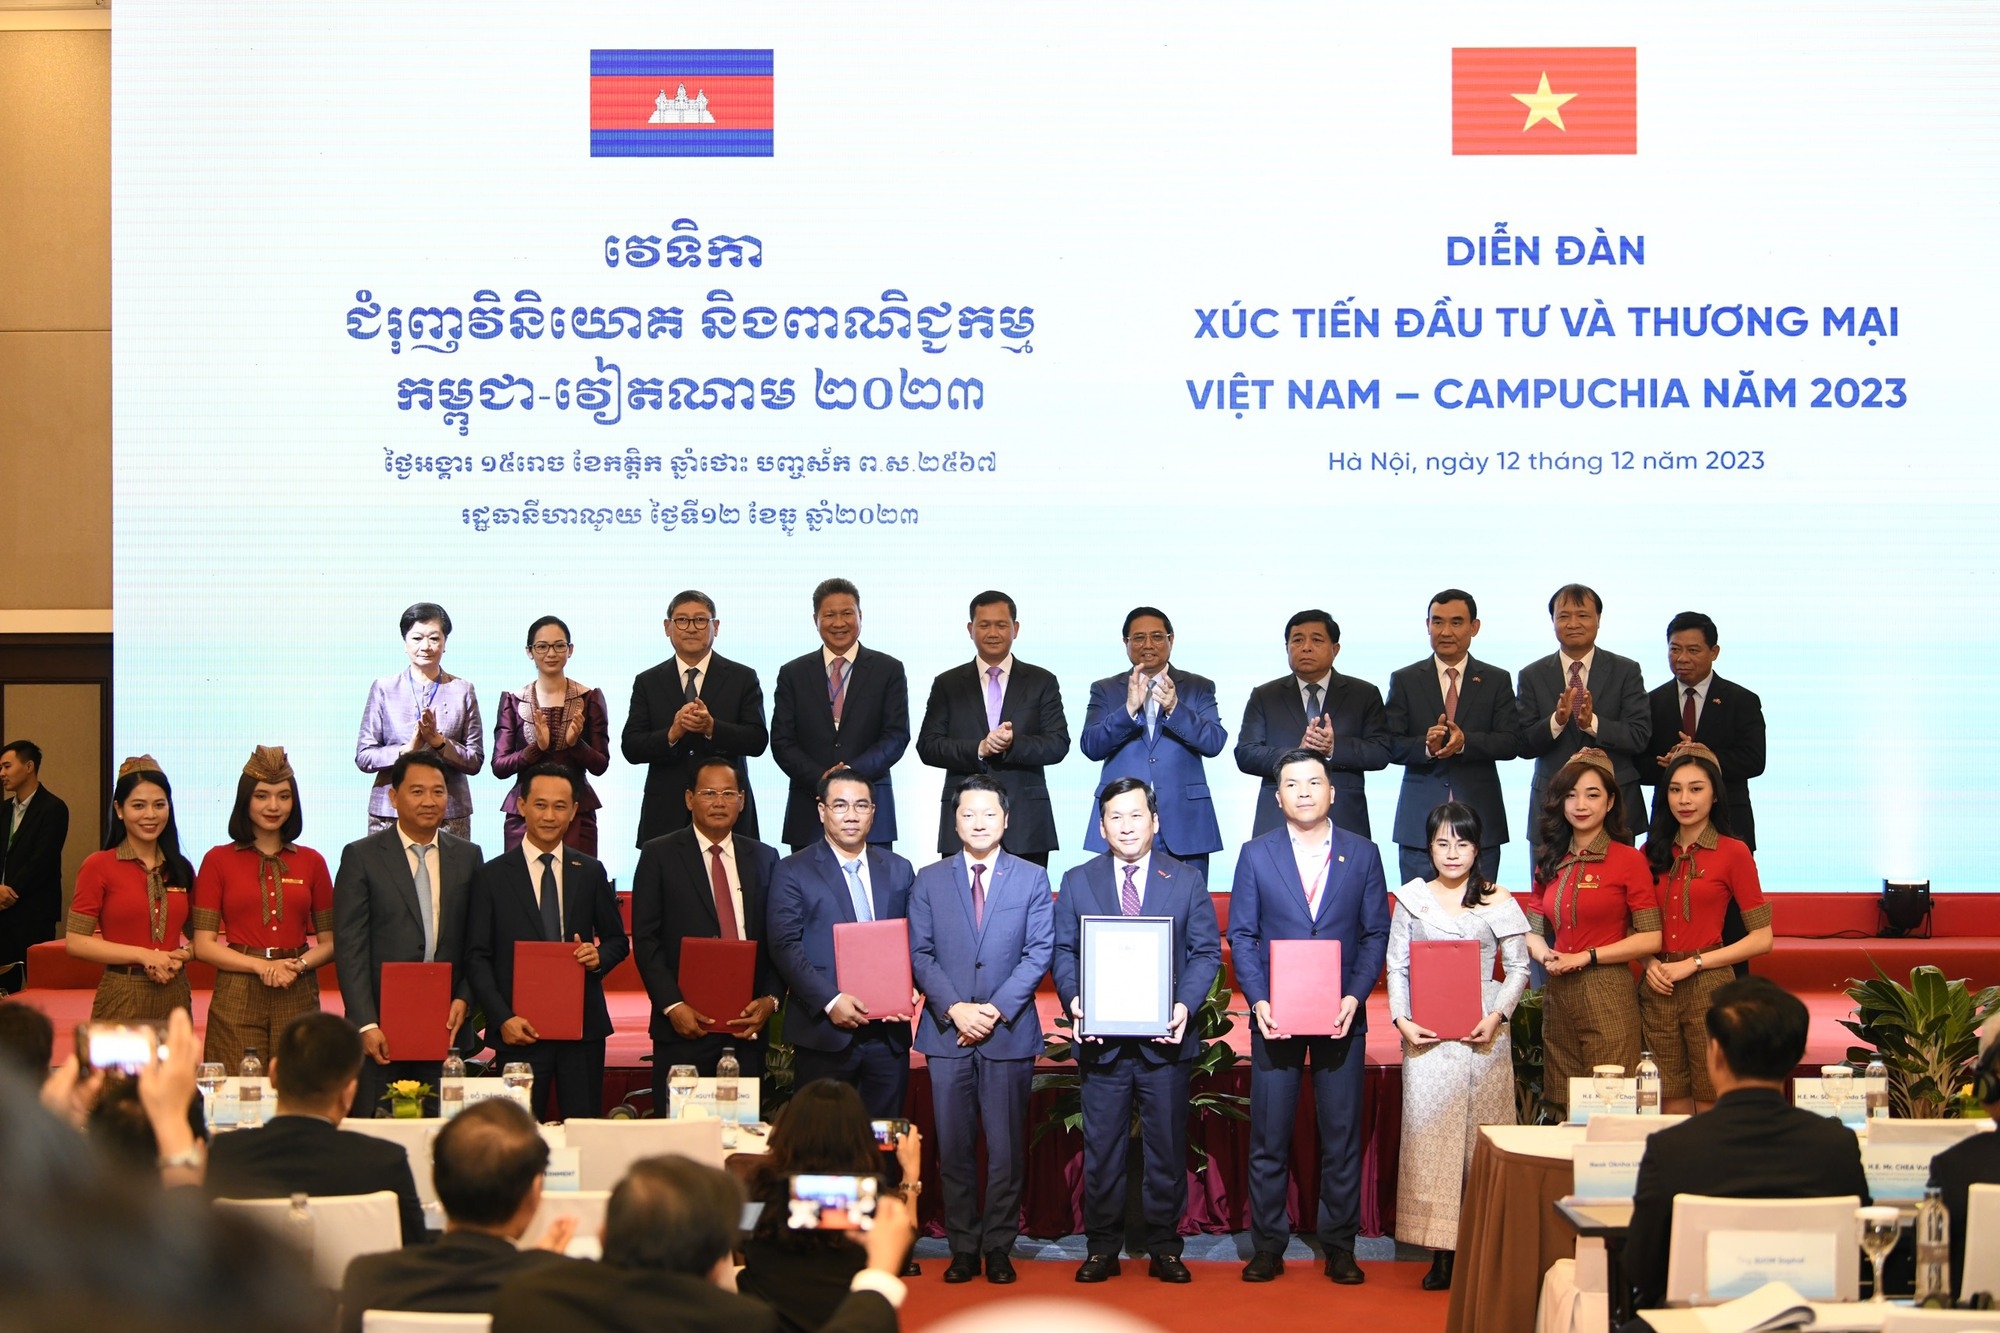 Việt Nam luôn tạo điều kiện thuận lợi nhất để thúc đẩy các doanh nghiệp Việt Nam và Campuchia hợp tác đầu tư, kinh doanh hiệu quả